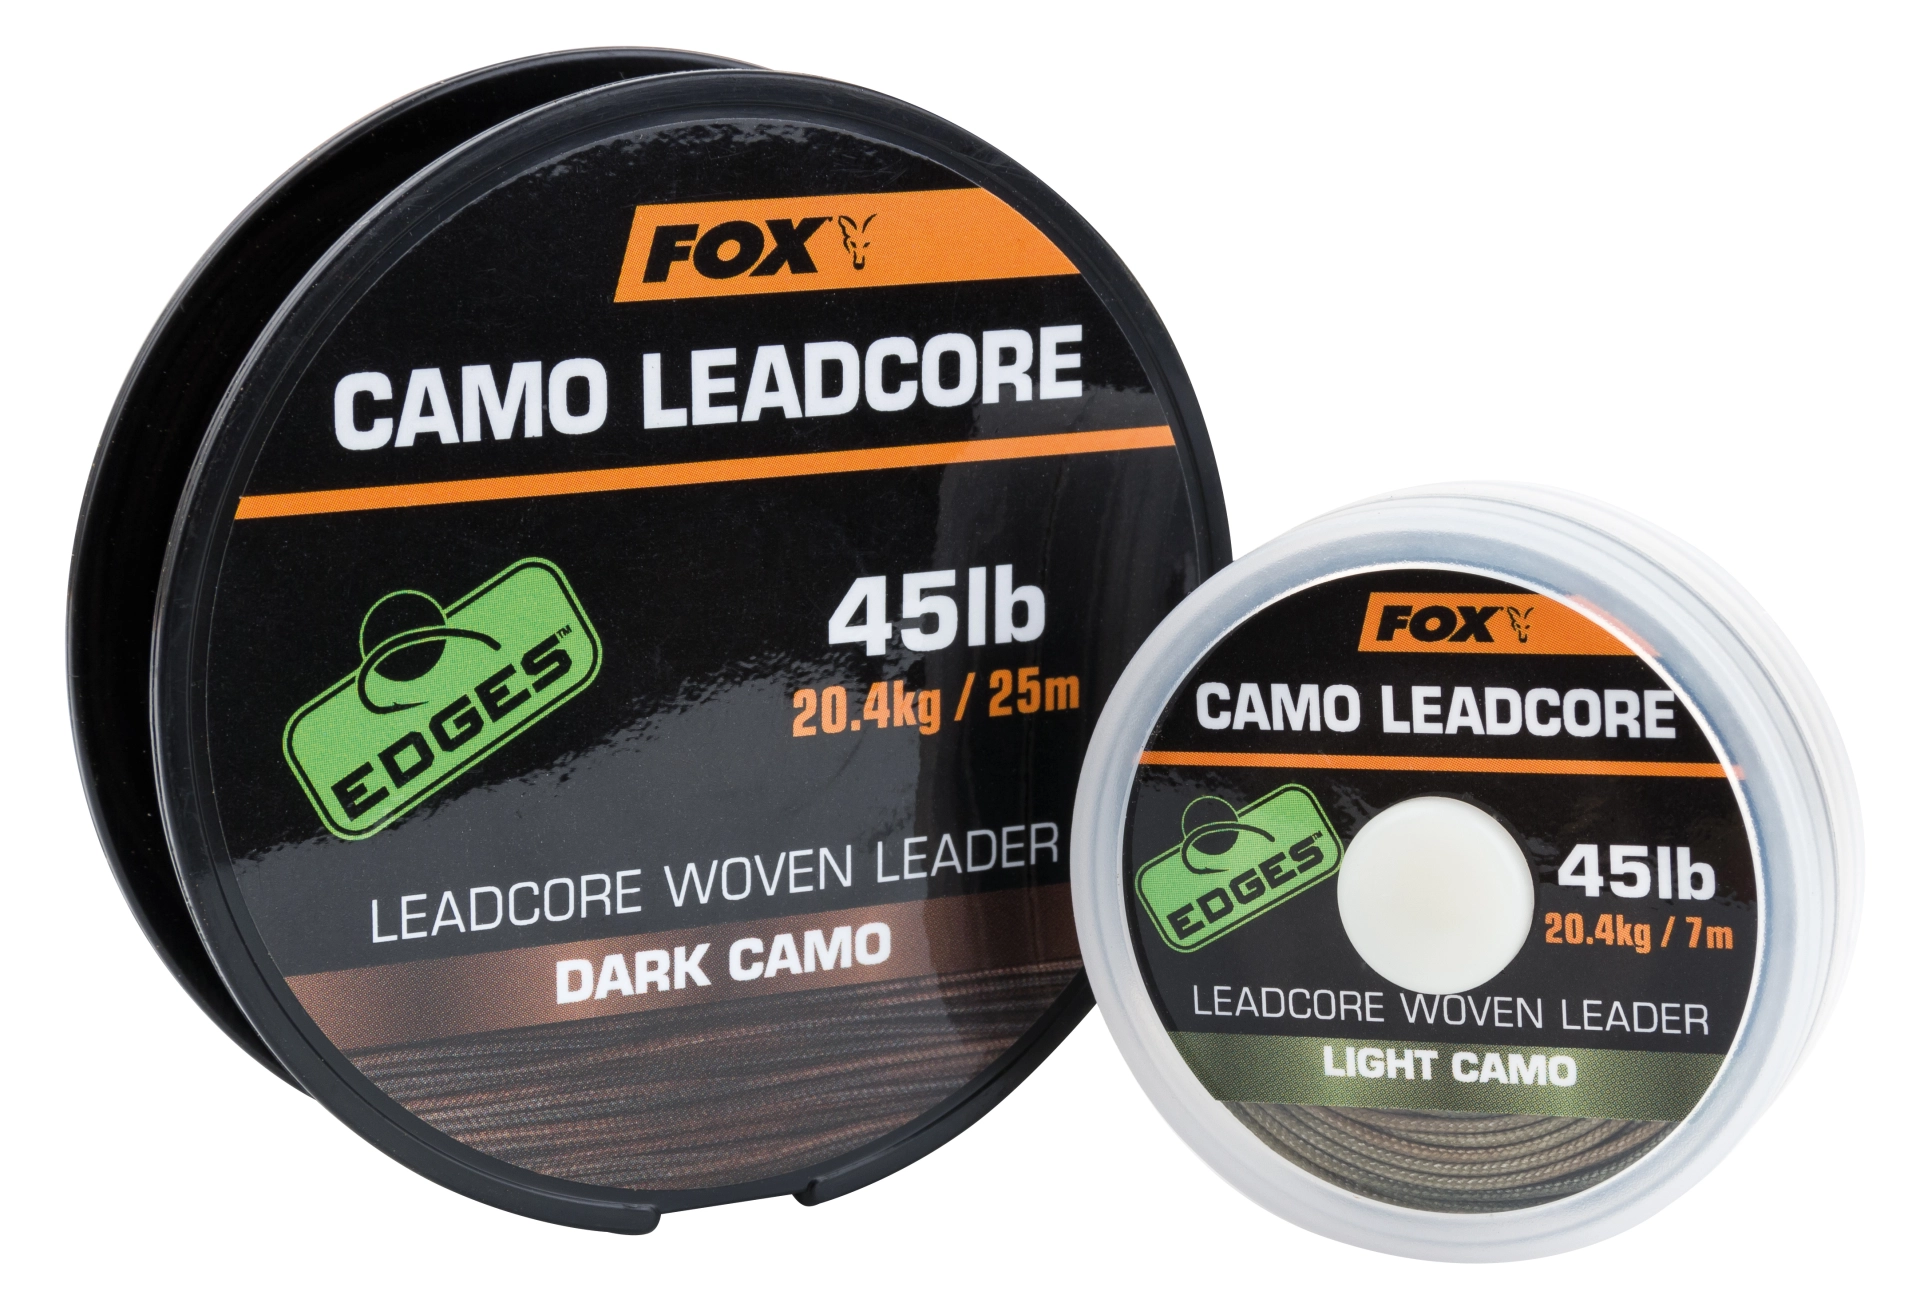 FOX Camo Leadcore